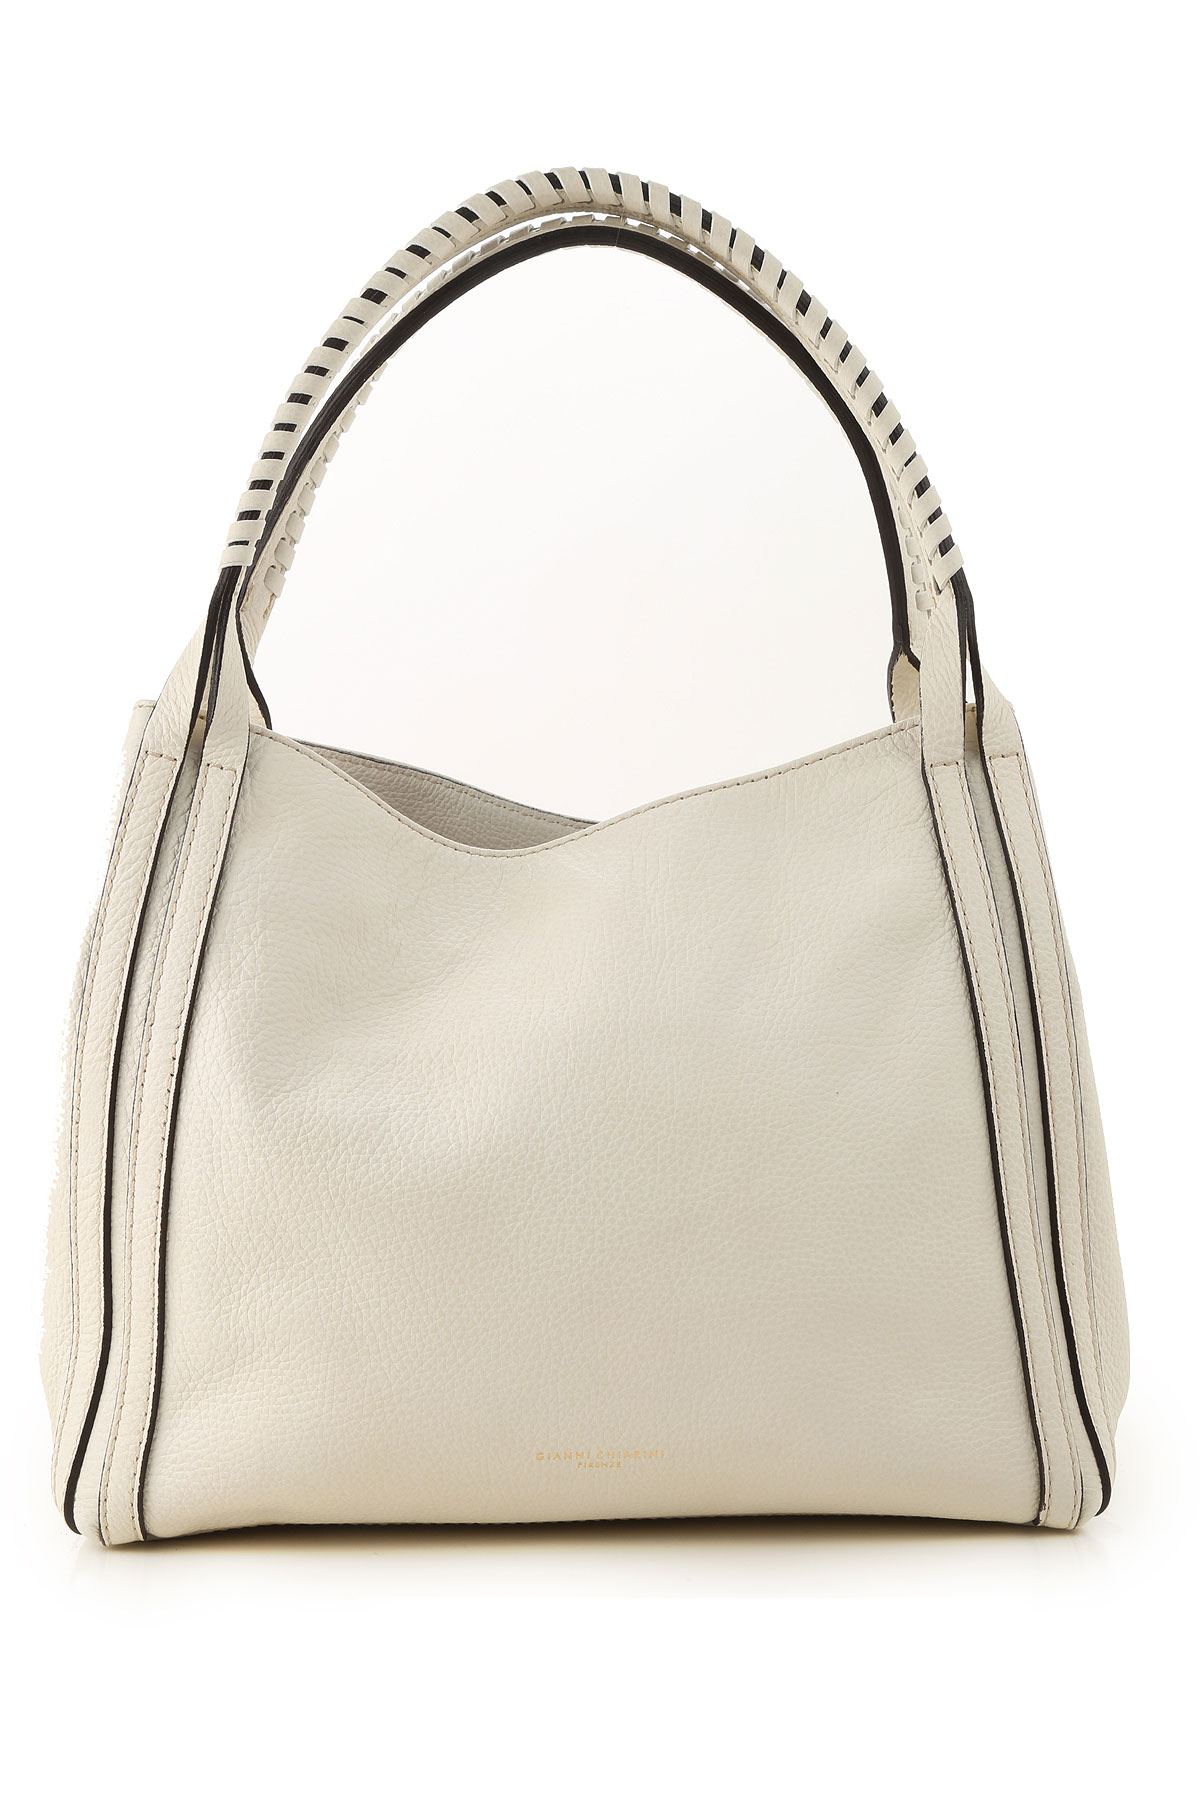 Handbags Gianni Chiarini, Style code: 6800-rmn-bianco